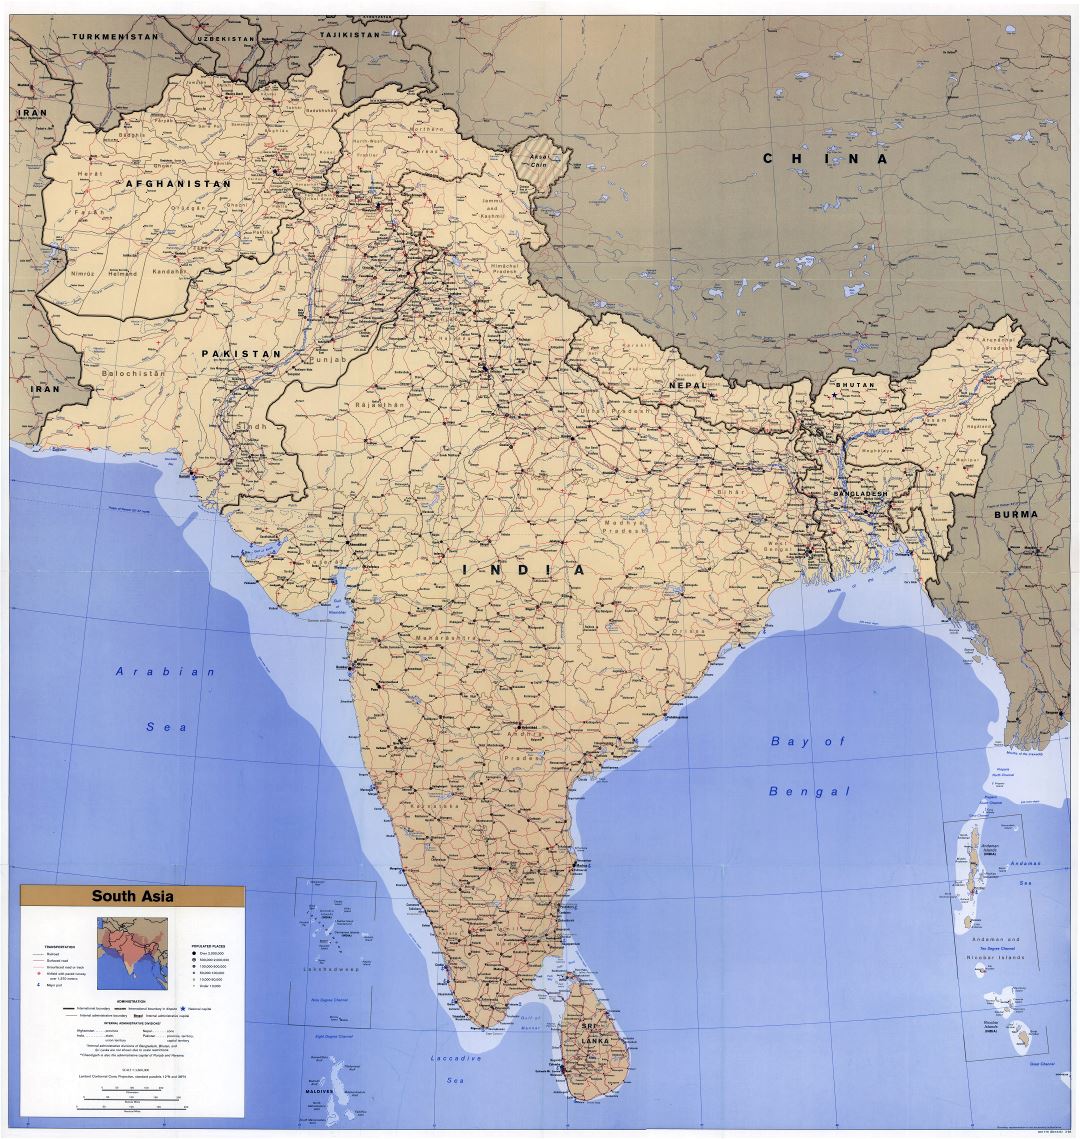 Gran escala del mapa político detallada del sur de Asia, con carreteras, ferrocarriles, ciudades, aeropuertos y puertos marítimos - 1993